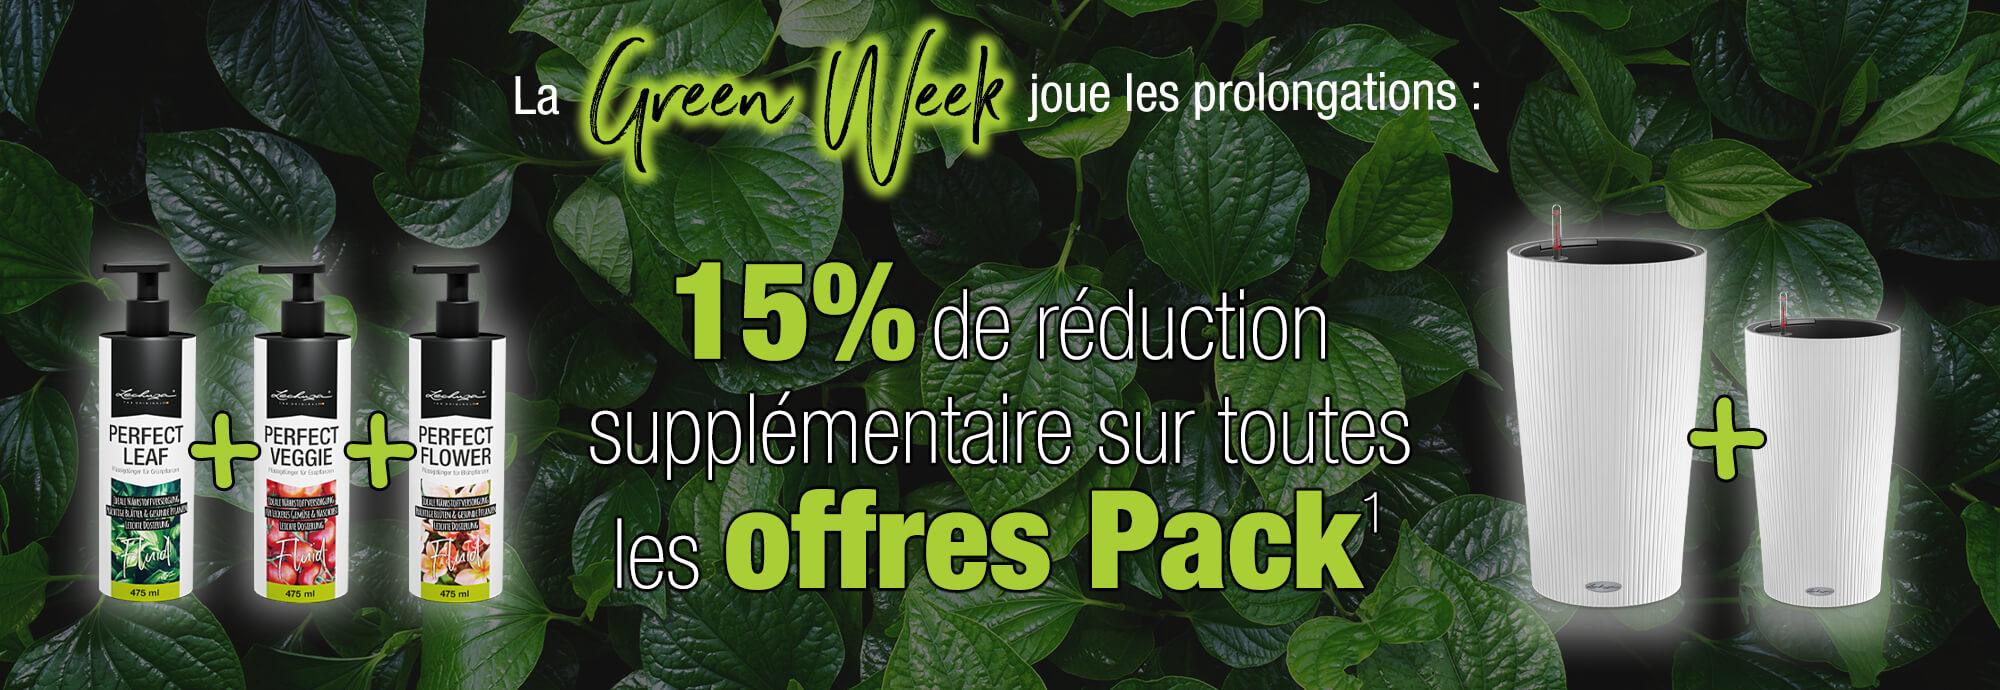 La Green Week joue les prolongations : 15% de réduction supplémentaire sur toutes les offres Pack